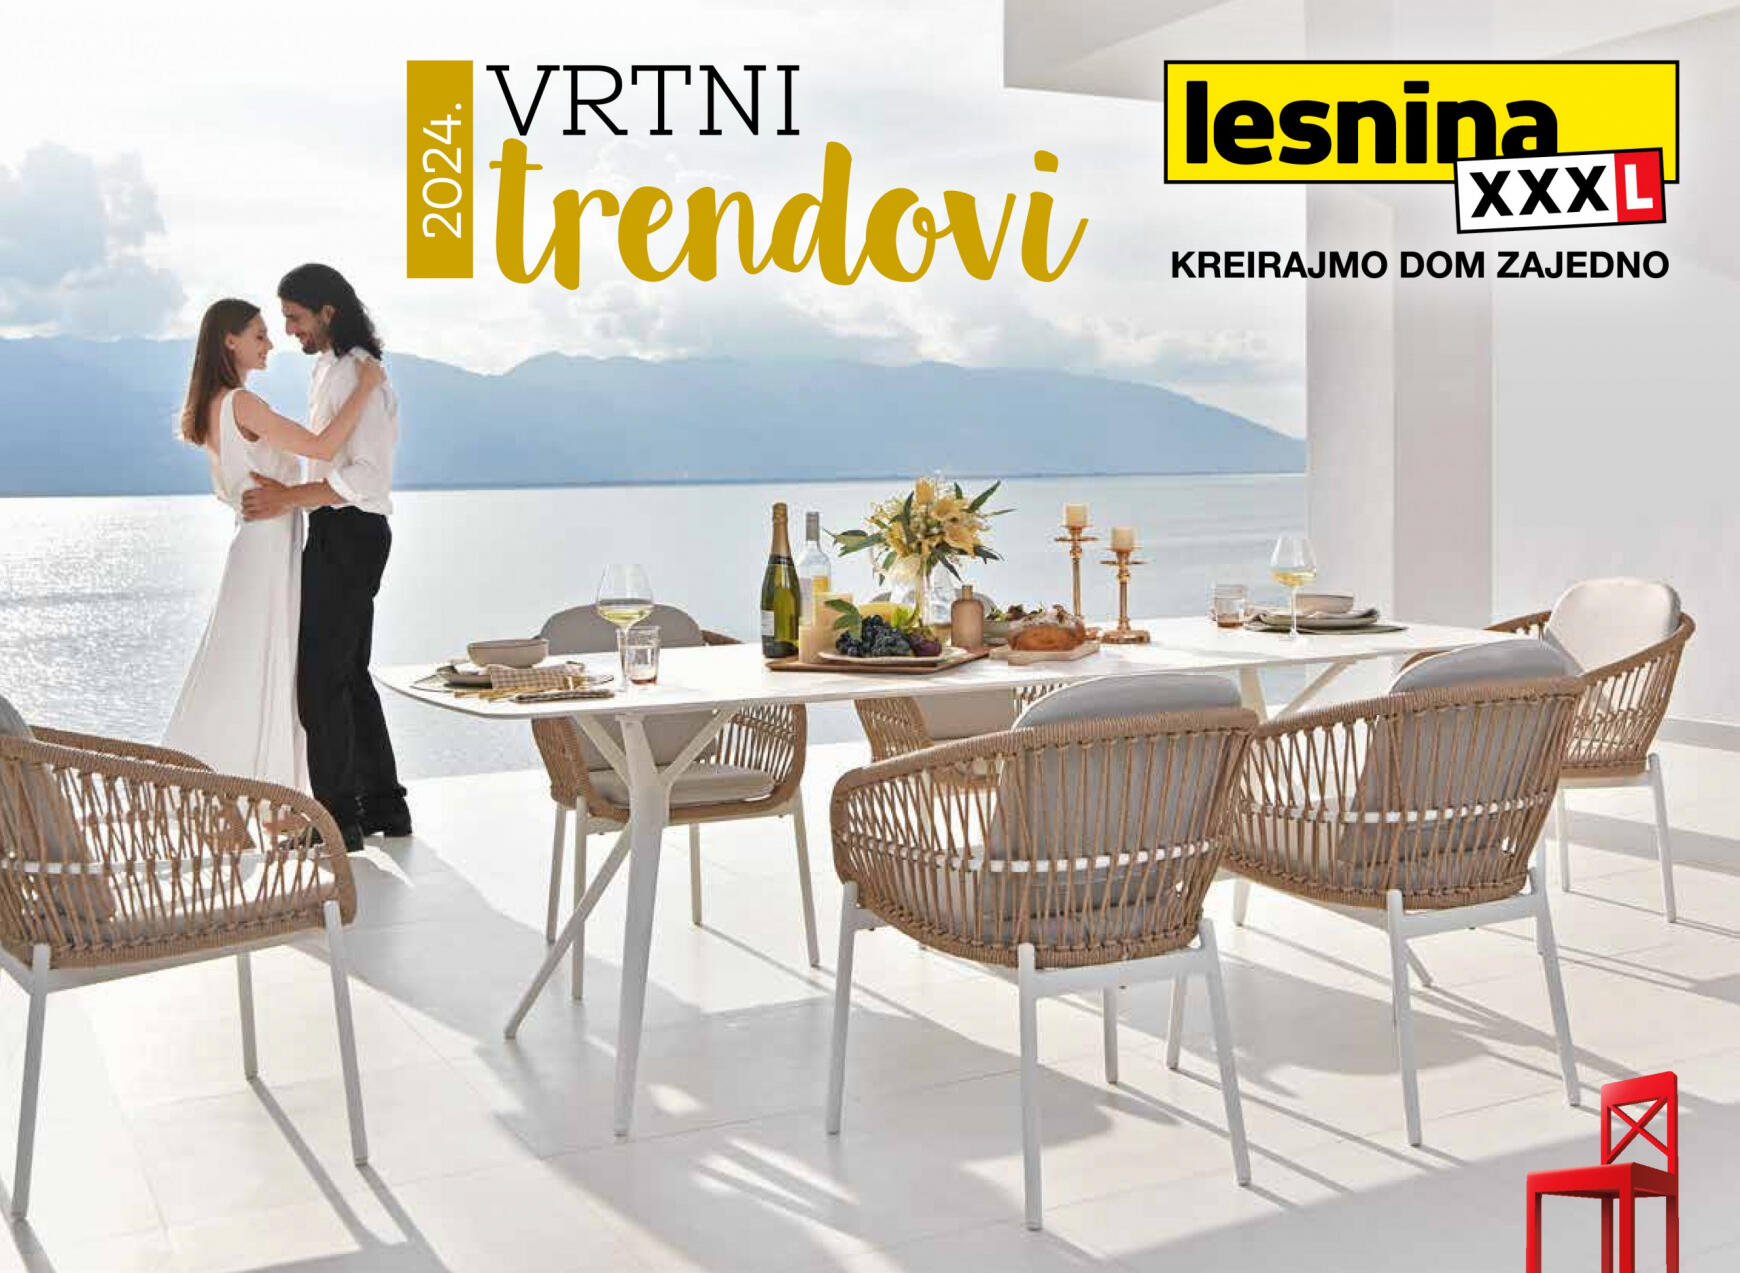 lesnina-xxxl - Novi katalog Lesnina - Vrtni trendovi 15.02. - 31.10.